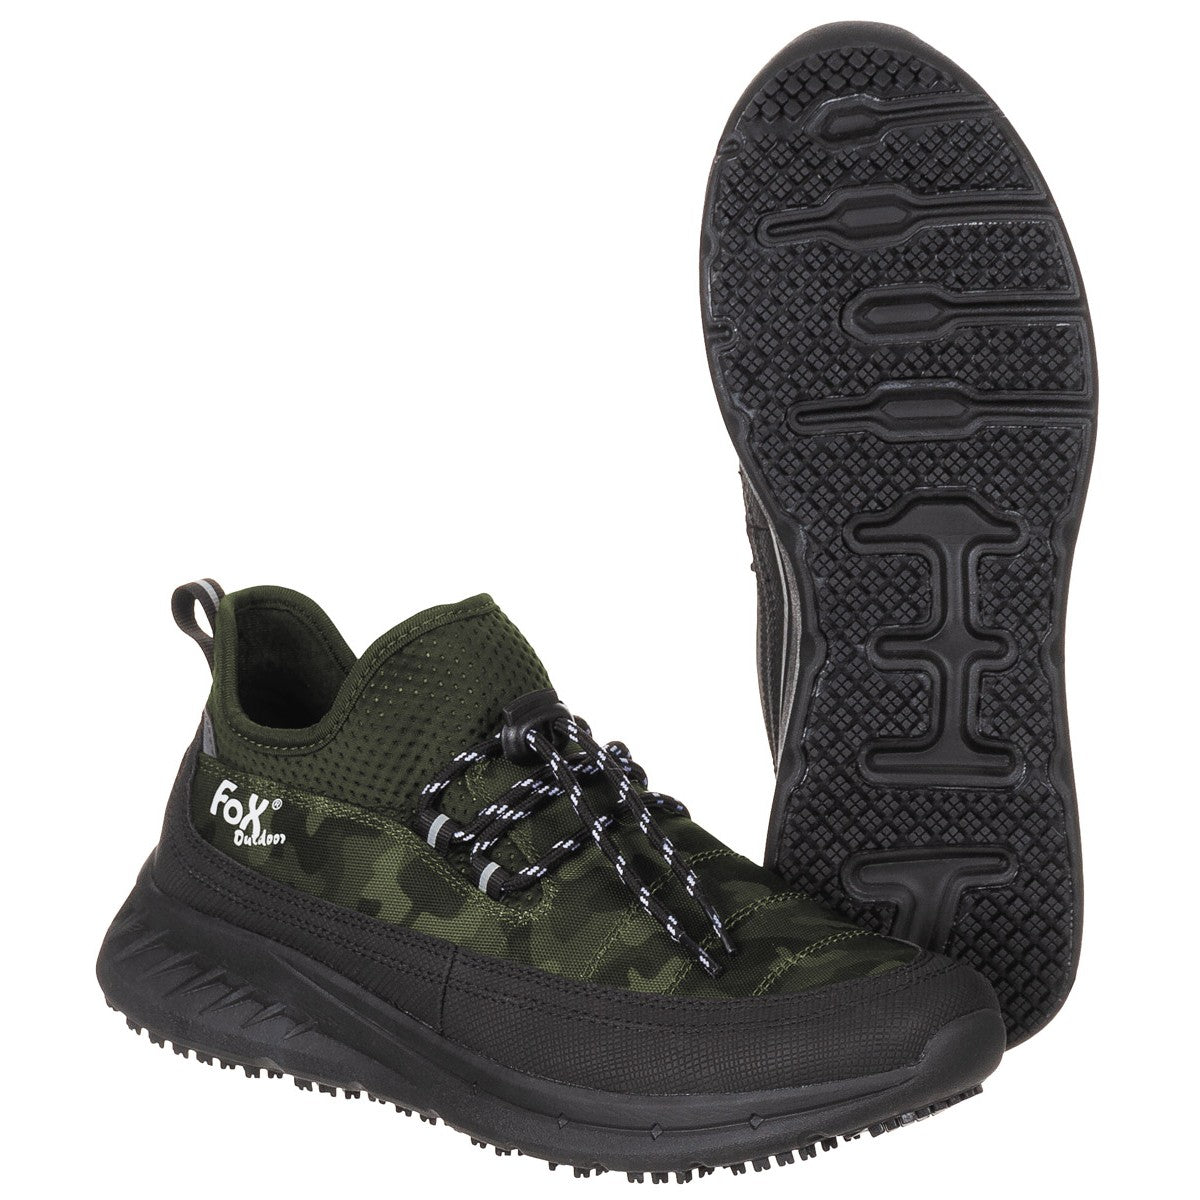 Outdoor-Schuhe, "Sneakers", tarn